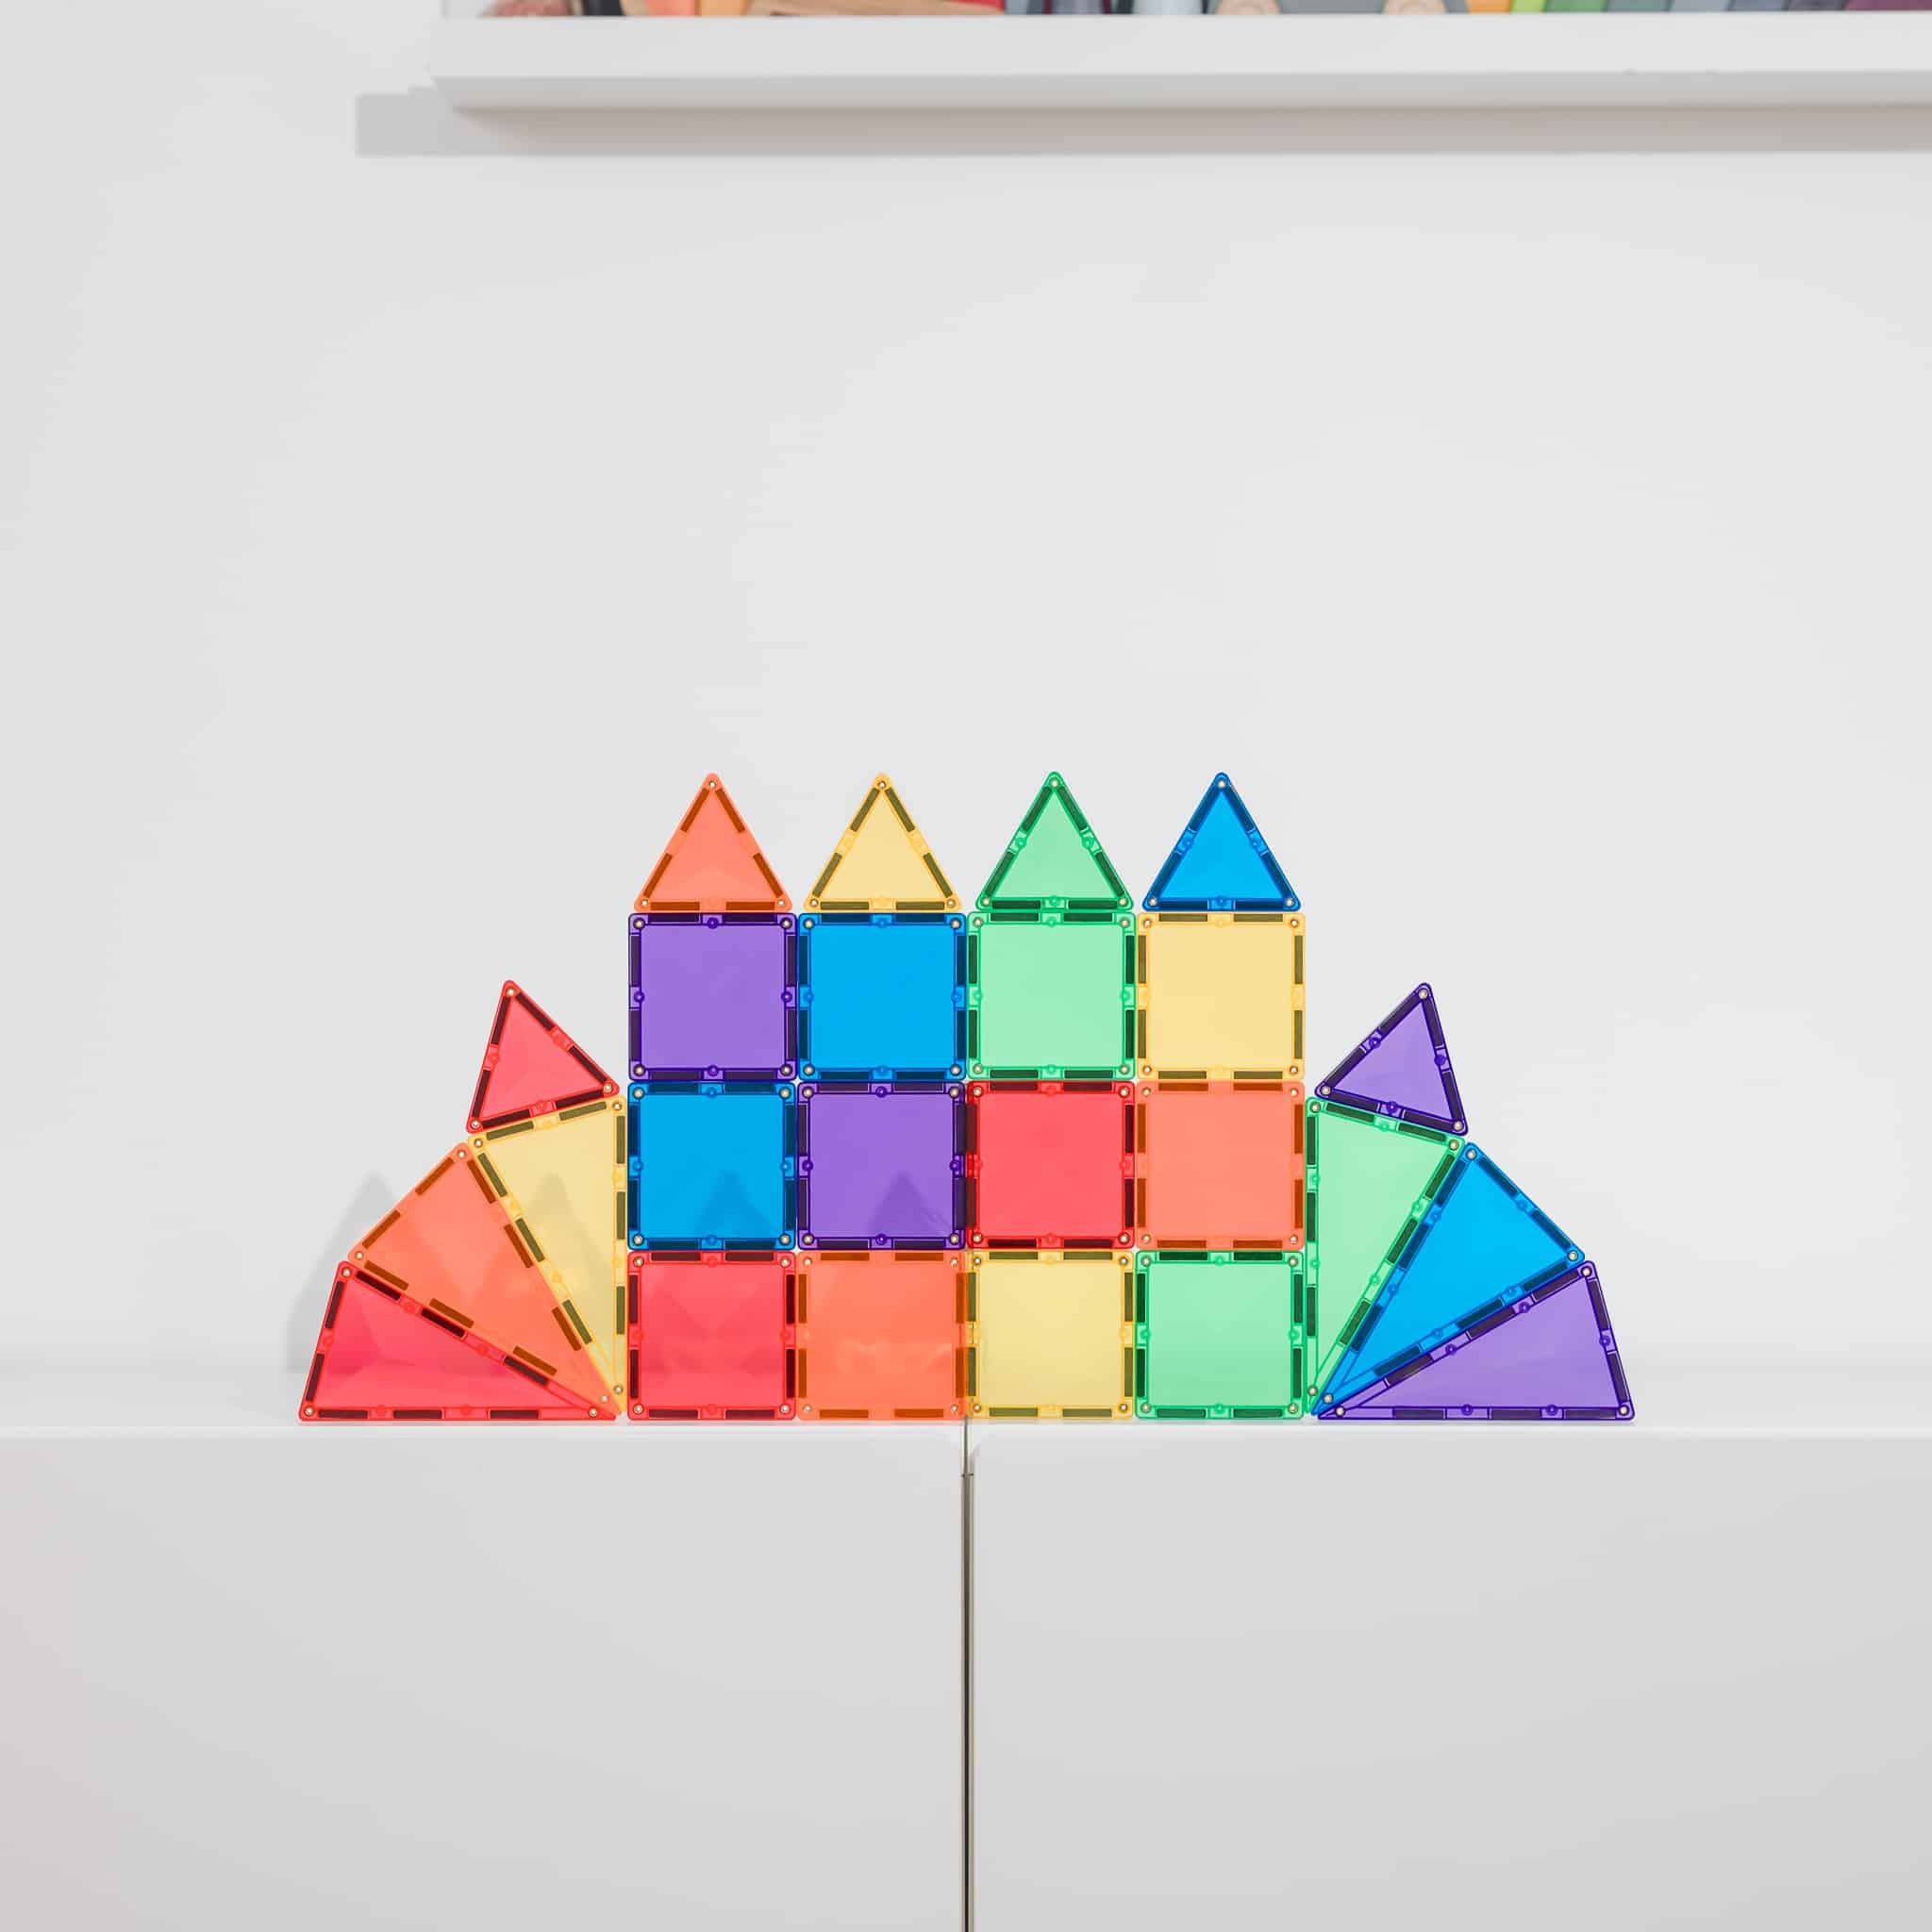 CONNETIX Magnetic Tiles - Rainbow Mini Pack 24pc